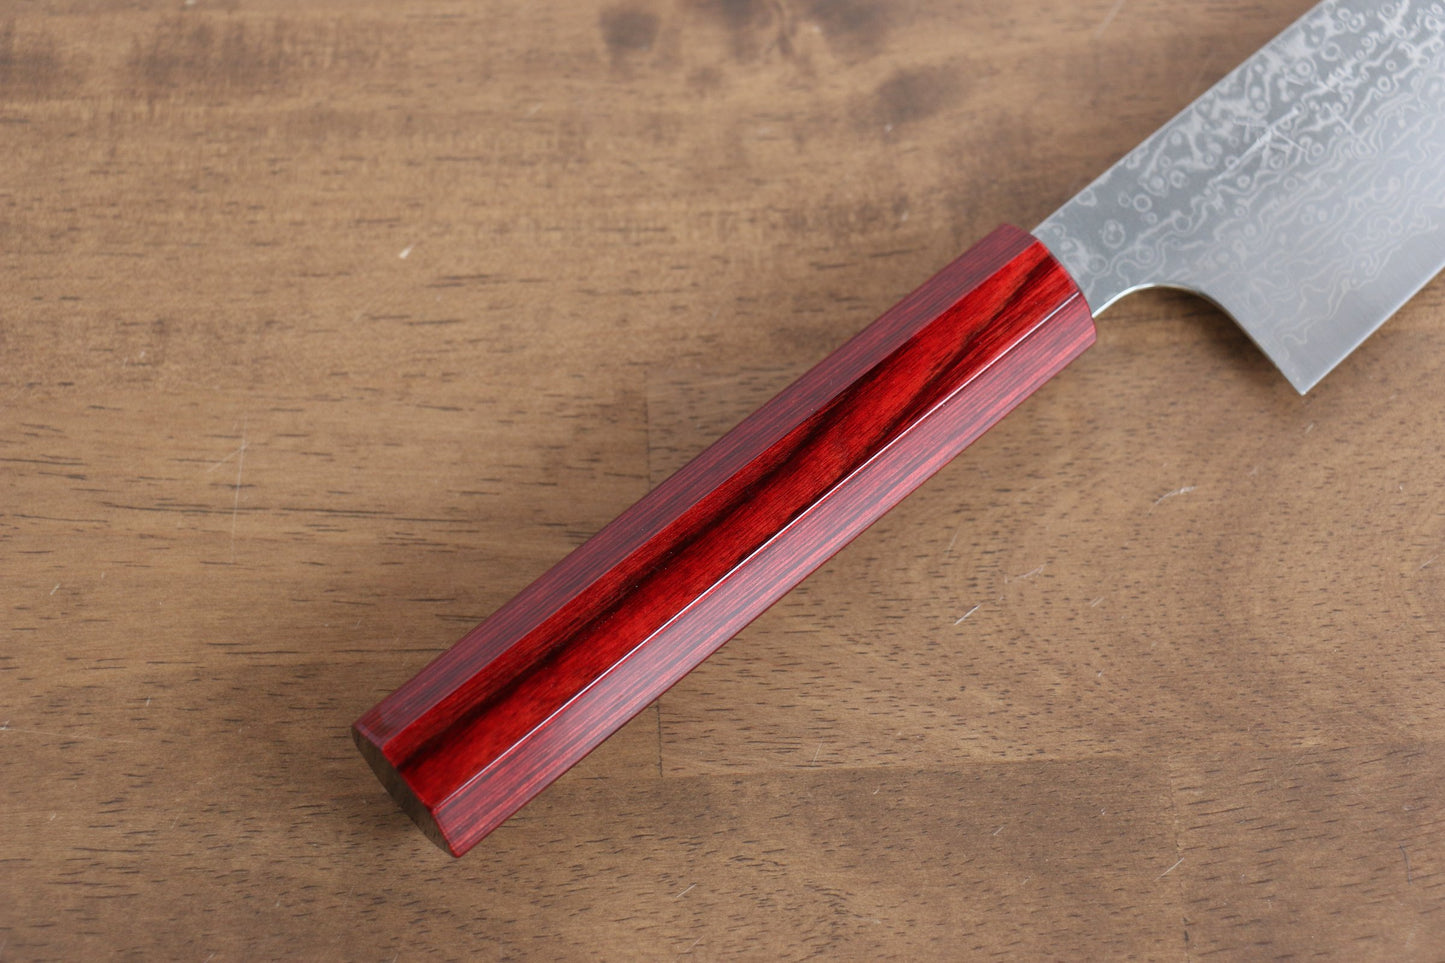 Thương hiệu Kei Kobayashi R2/SG2 Thép Damascus Dao đa năng Bunka dao Nhật 170mm chuôi dao sơn mài đỏ